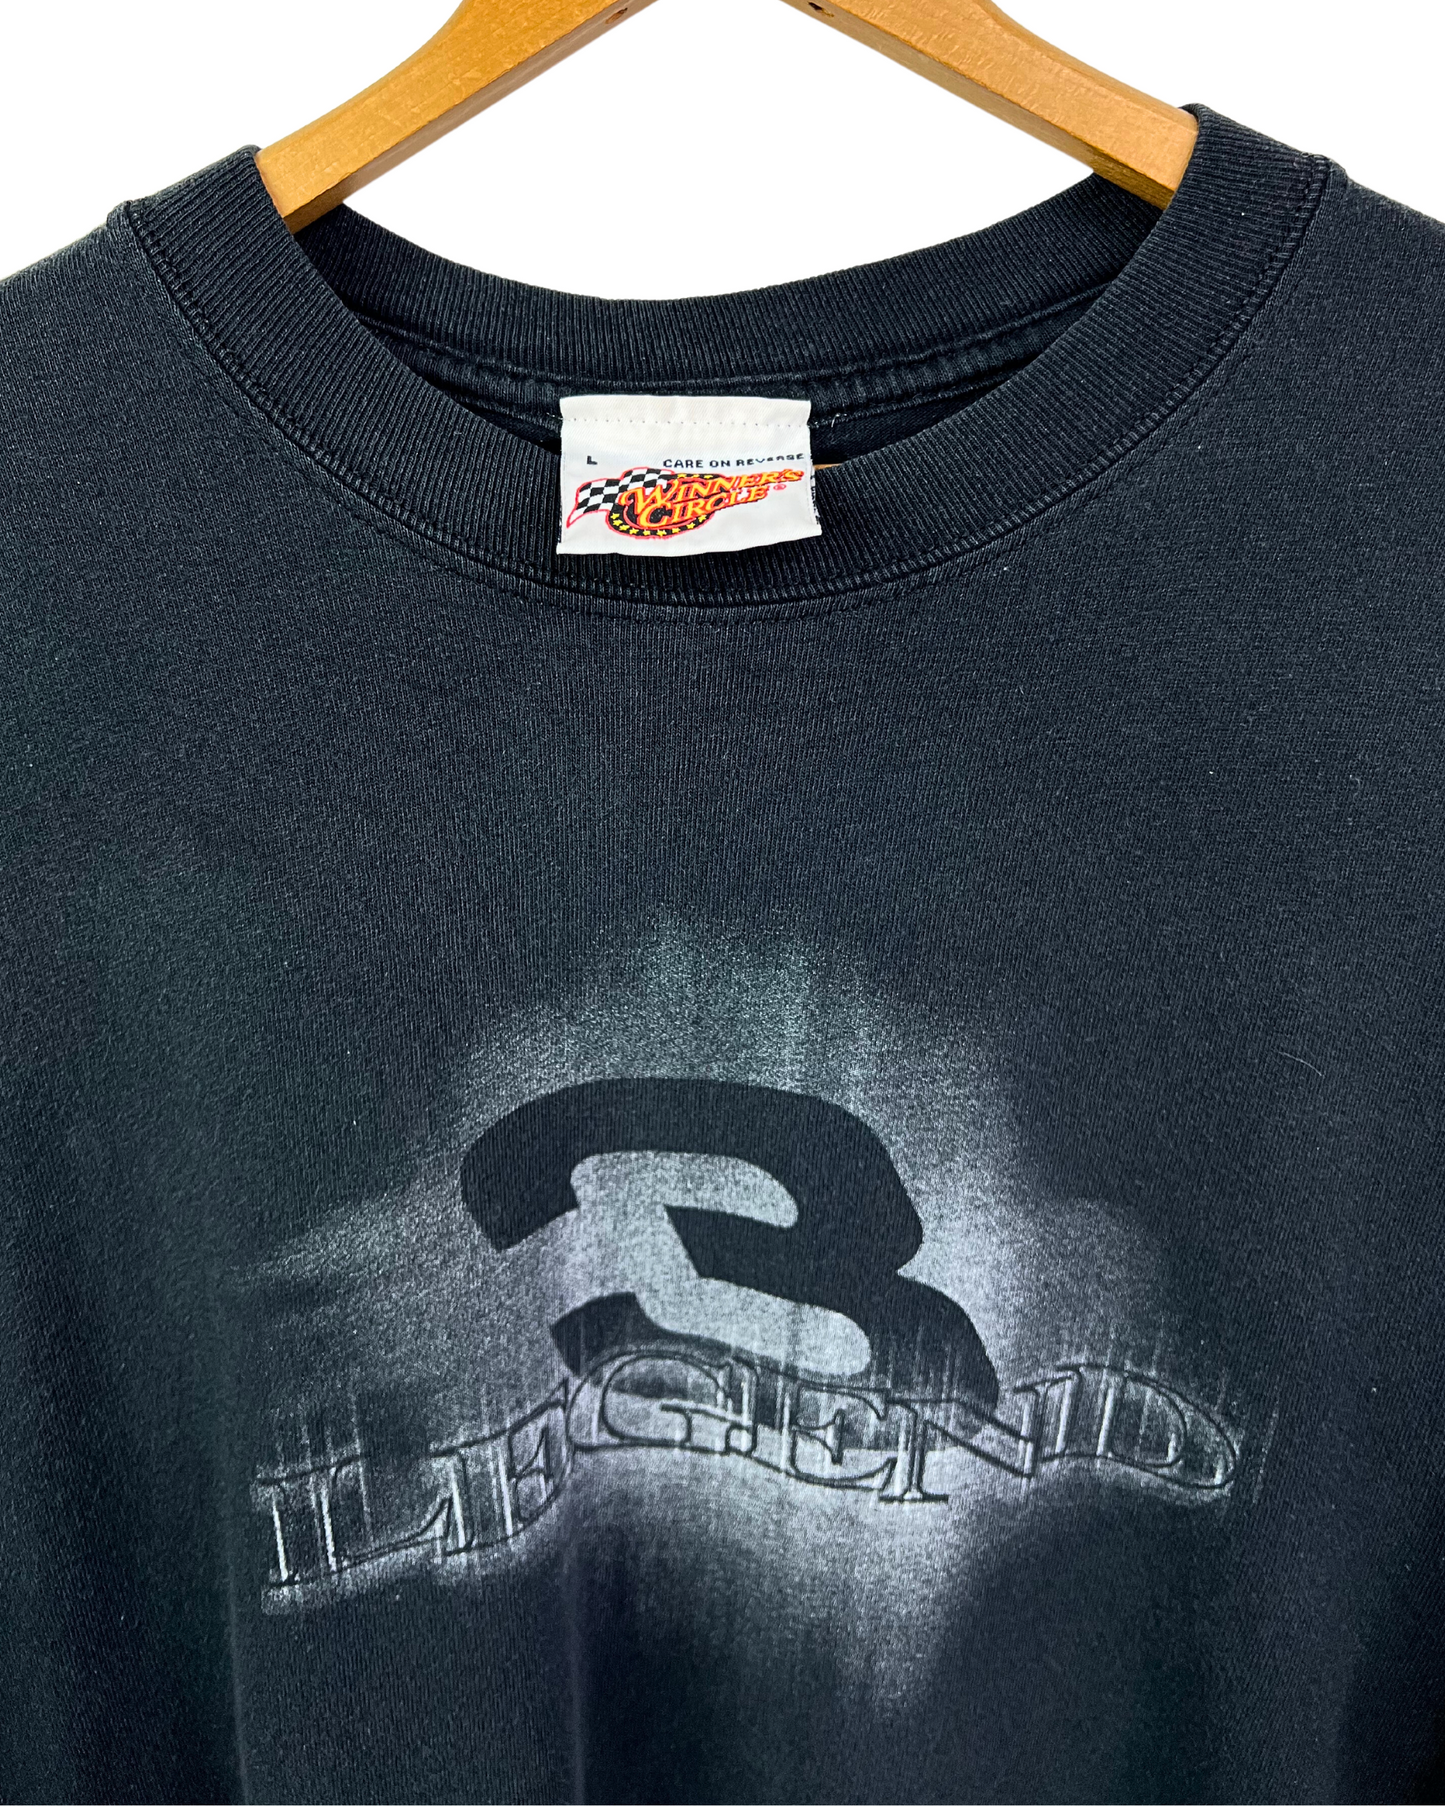 Vintage 2000 Dale Earnhardt #3 NASCAR Legend Career Making of a True Champion T-Shirt Size L